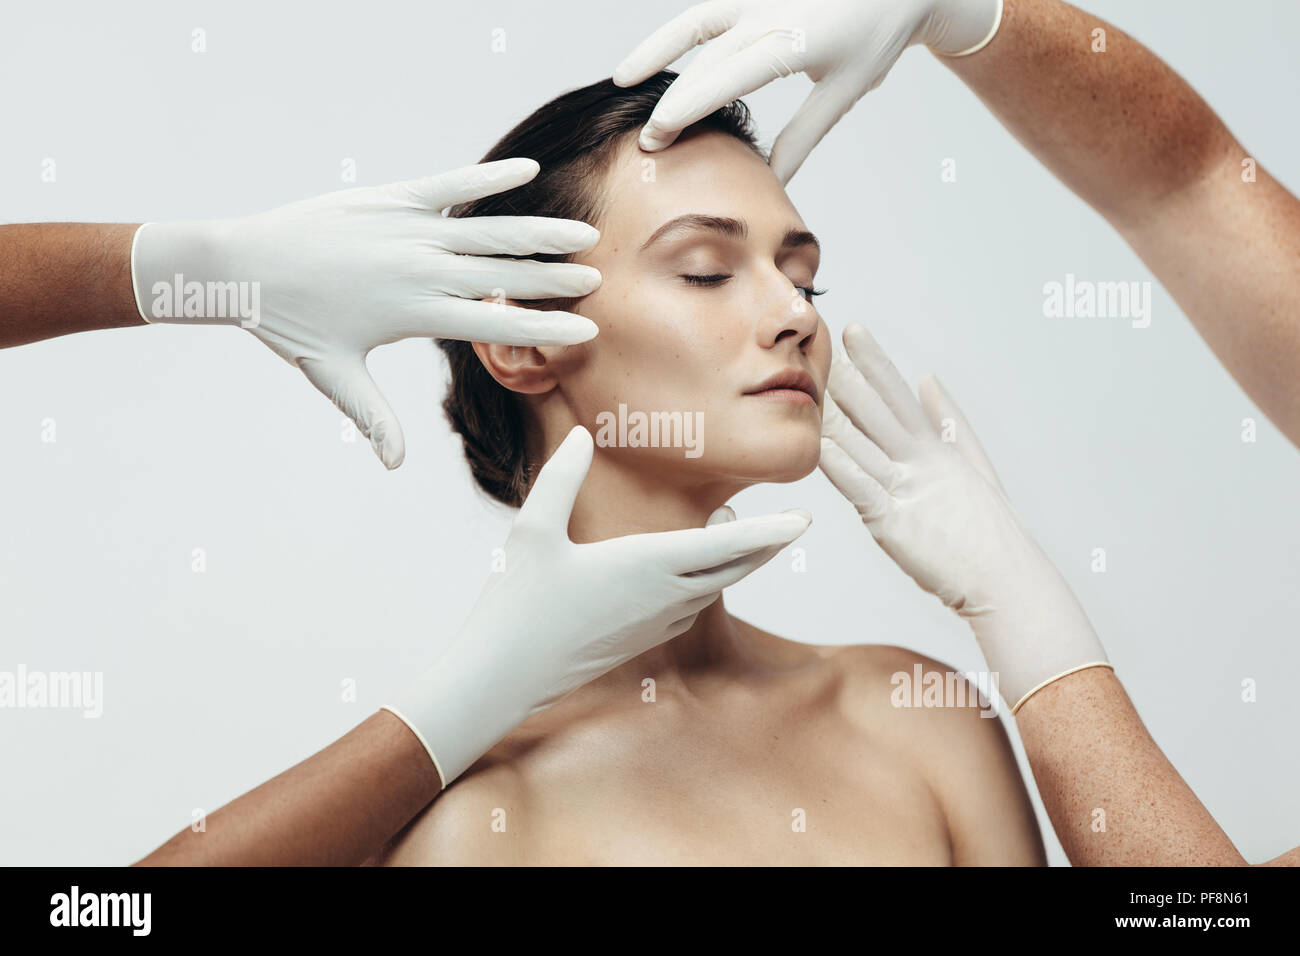 Zwei cosmetologists berühren und Prüfung der Gesichtshaut einer Frau. Frau Gesicht Kosmetikerinnen Hände in Studio geprüft wird. Stockfoto